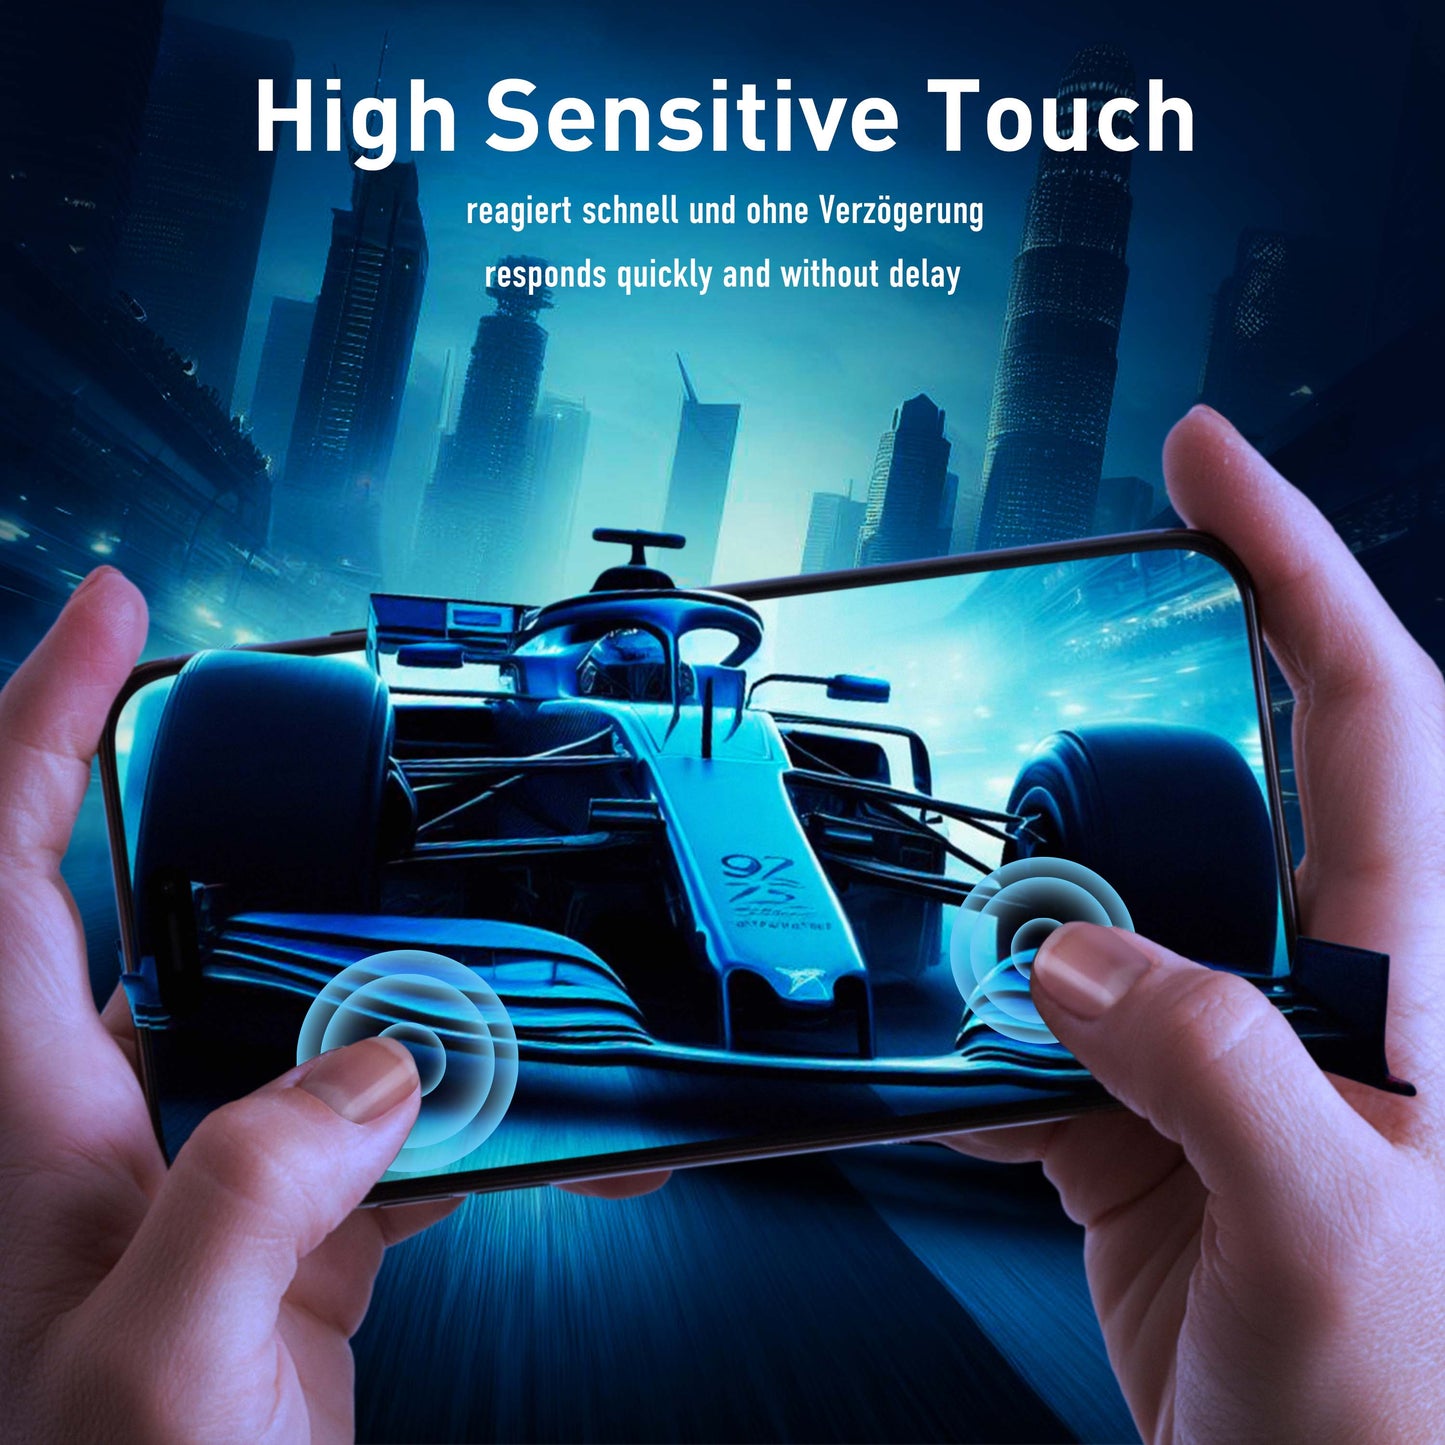 smartect Schutzglas Klar für Samsung Galaxy A34 5G, 3 Stück